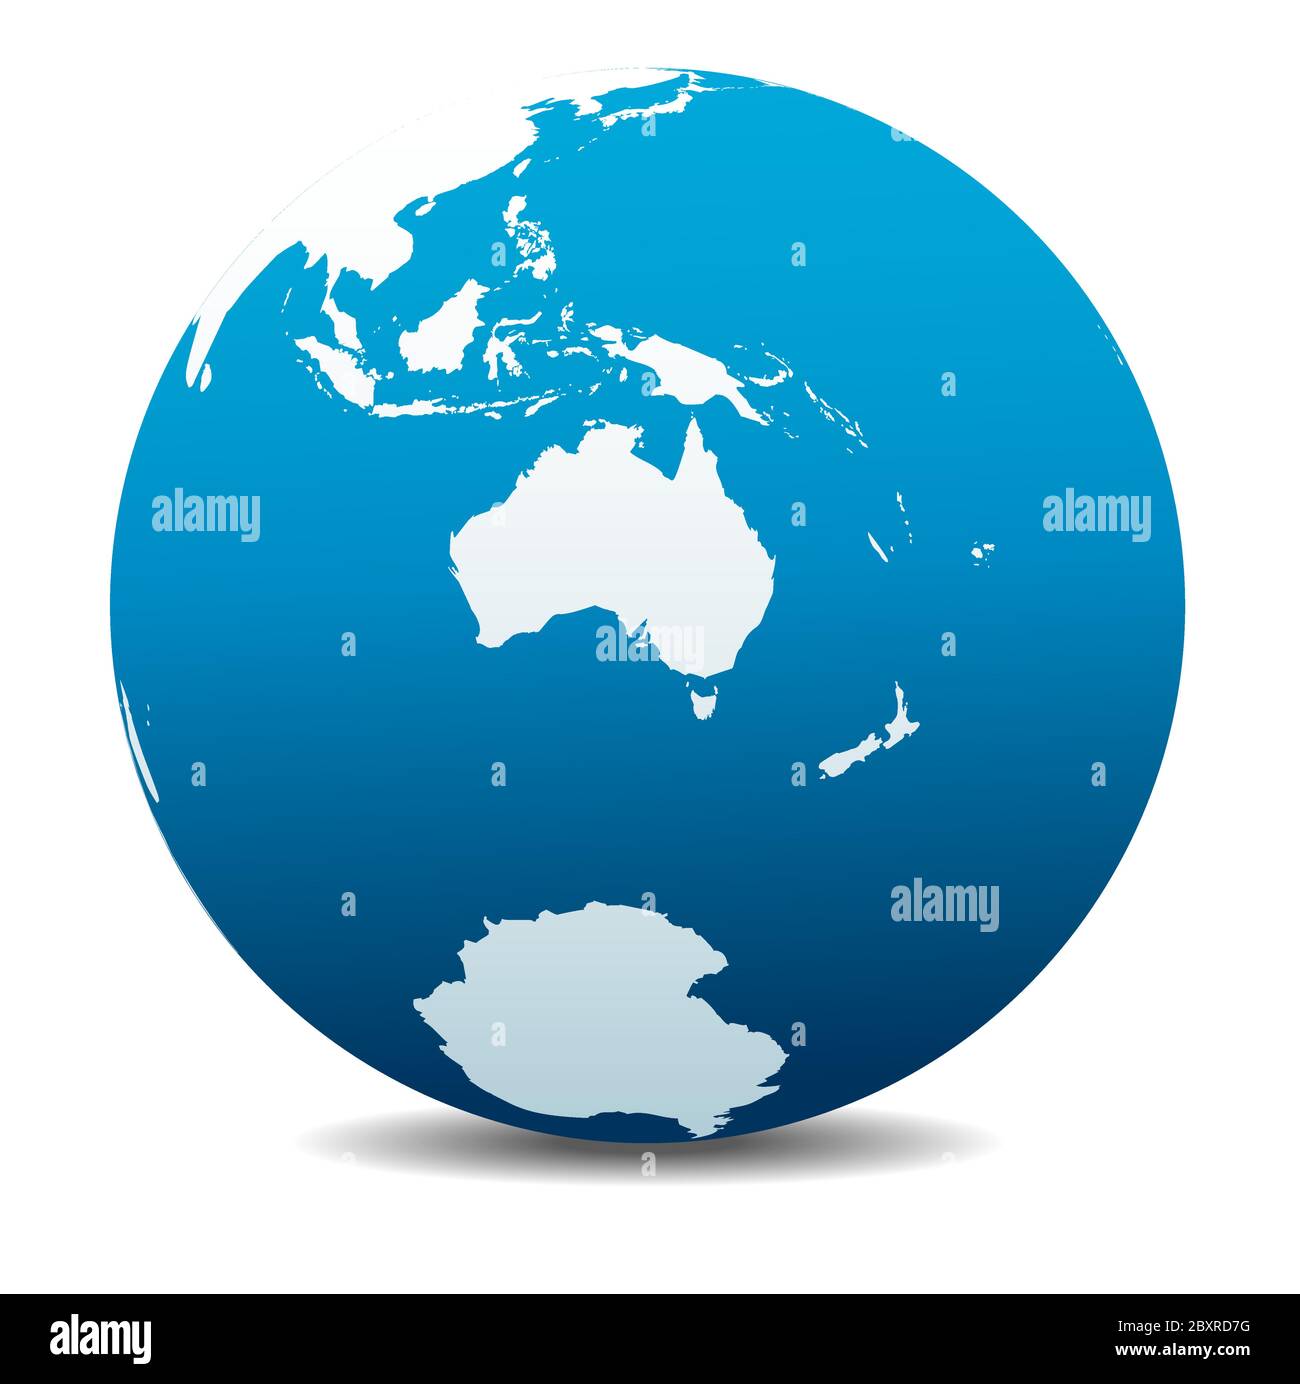 Australie et Nouvelle-Zélande, pôle Sud, Antarctique. Icône carte vectorielle du globe terrestre, Terre. Tous les éléments se trouvent sur des calques individuels dans le fichier vectoriel. Illustration de Vecteur